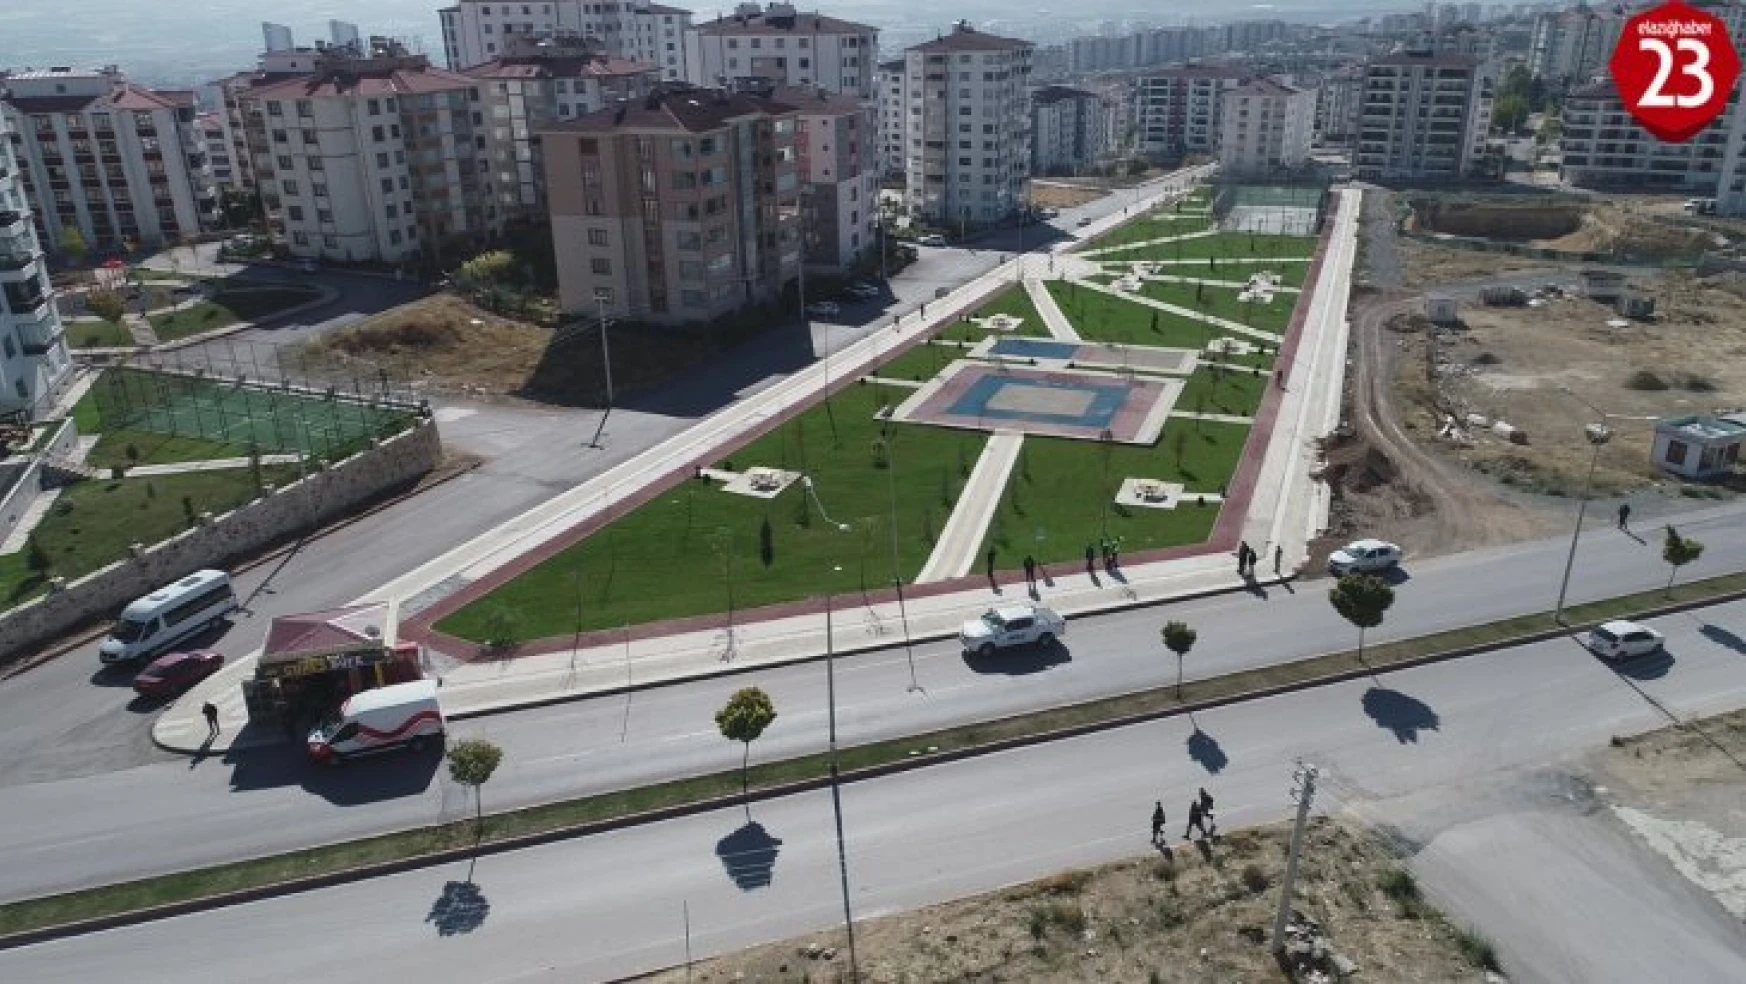 Elazığ Belediyesi, Afet ve Acil Durum Toplanma Alanlarını Belirledi